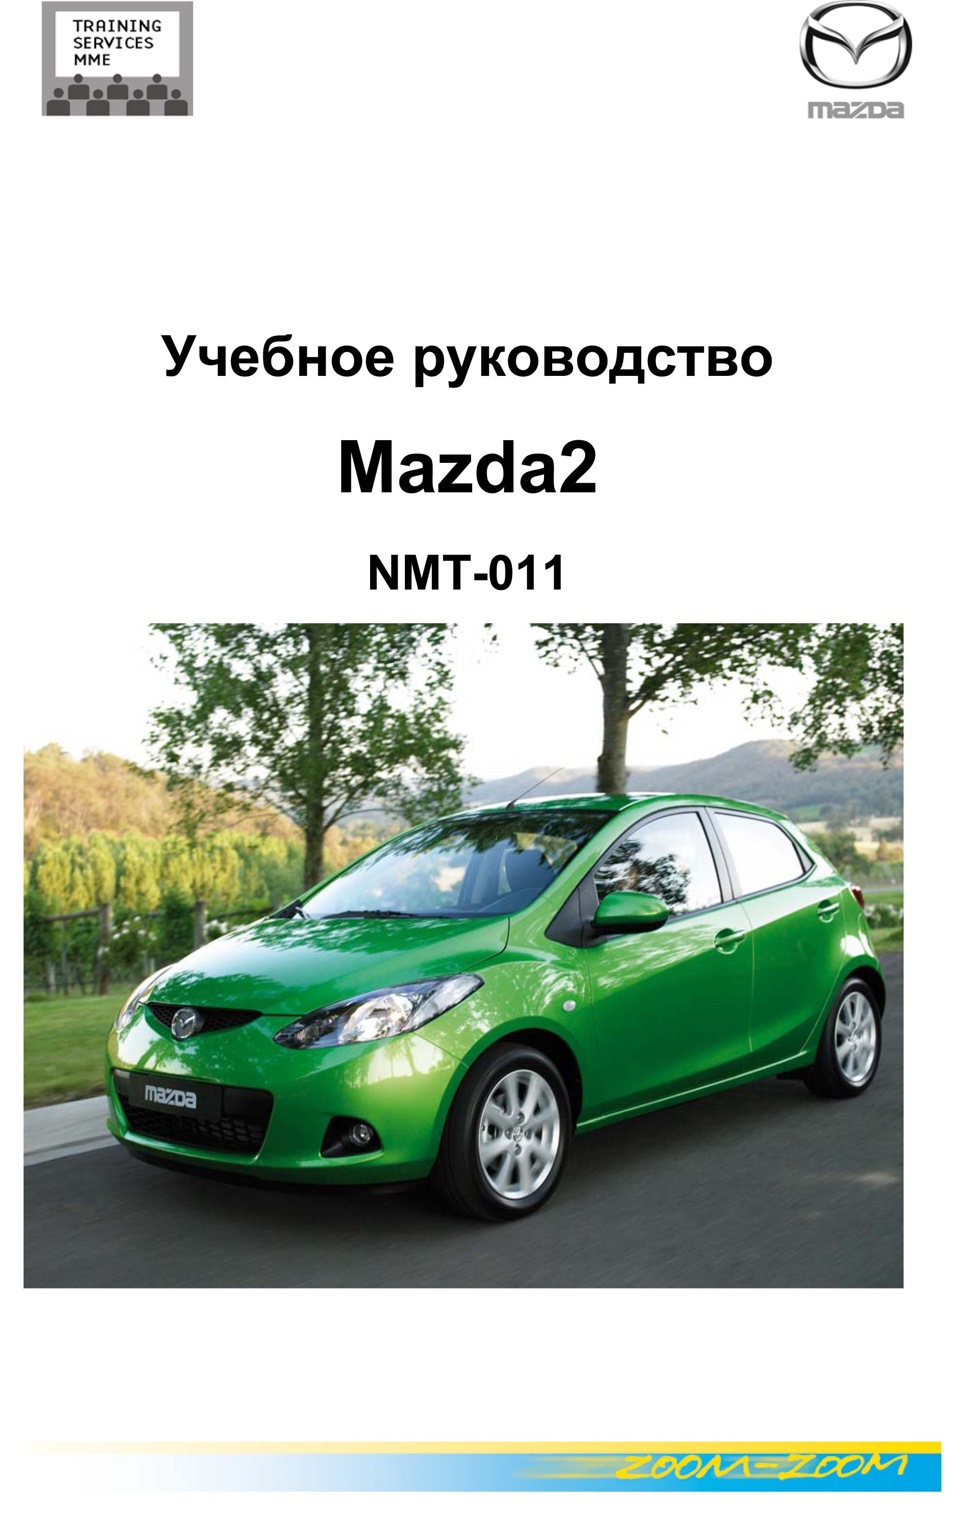 Mazda инструкция. Мазда мануал. Книга Mazda 2. Руководство по ремонту Mazda 2. Мазда Демио книга.